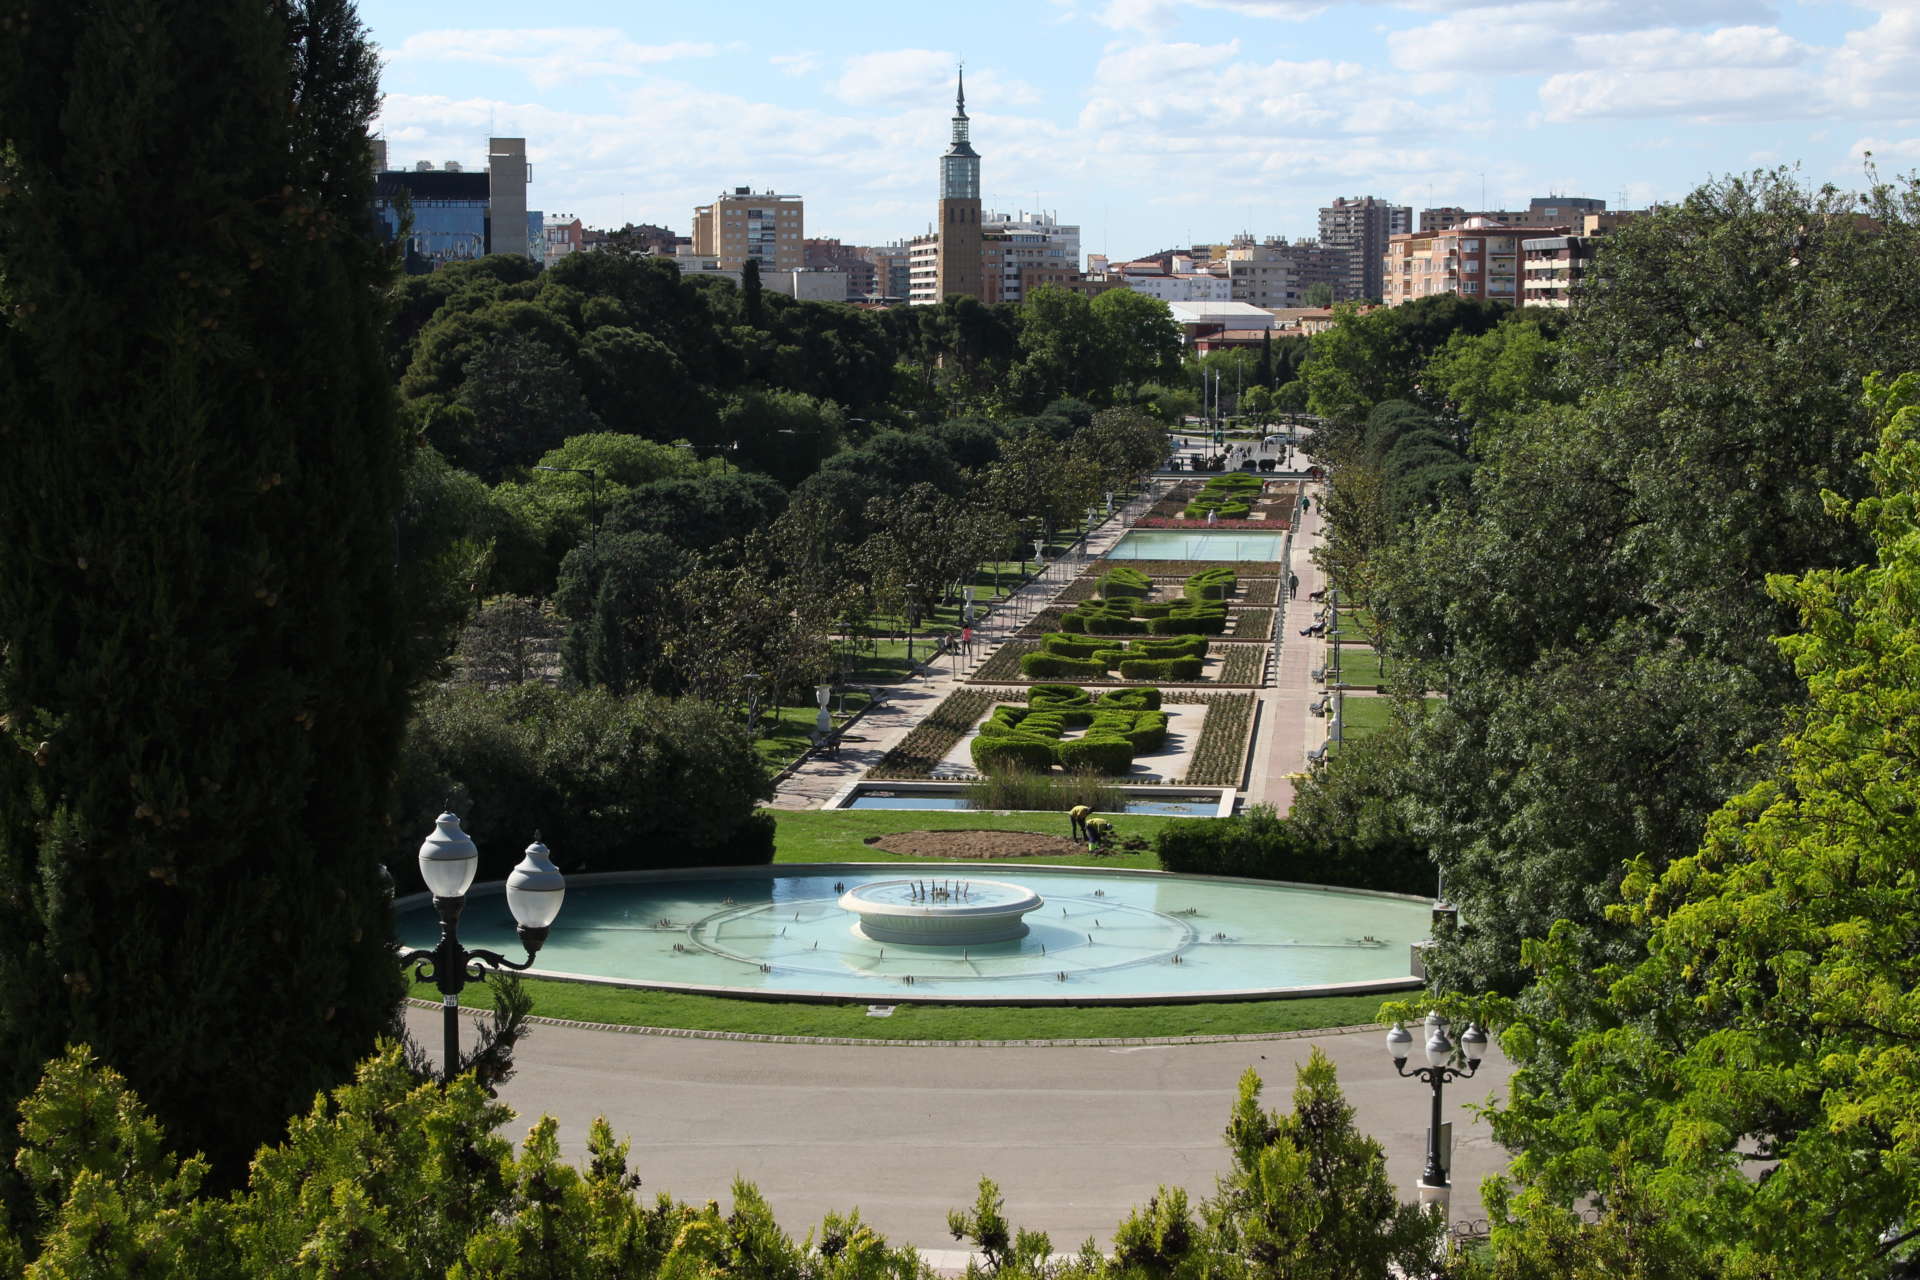 El Parque Grande José Antonio Labordeta